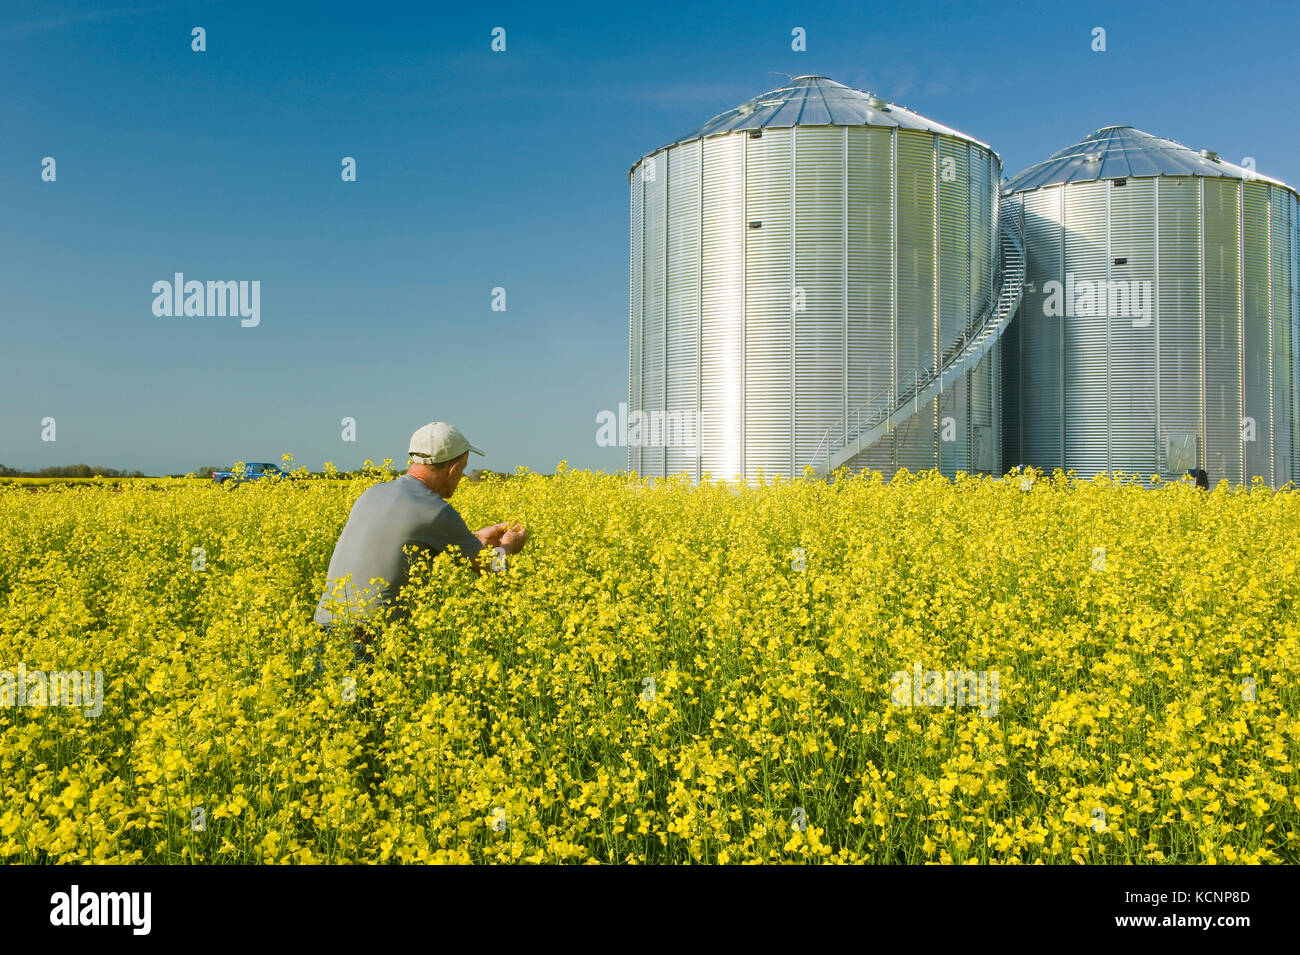 Un homme scouts un champ de floraison du canola à cellules à grains(silos) dans l'arrière-plan, Saskatchewan, Canada Banque D'Images